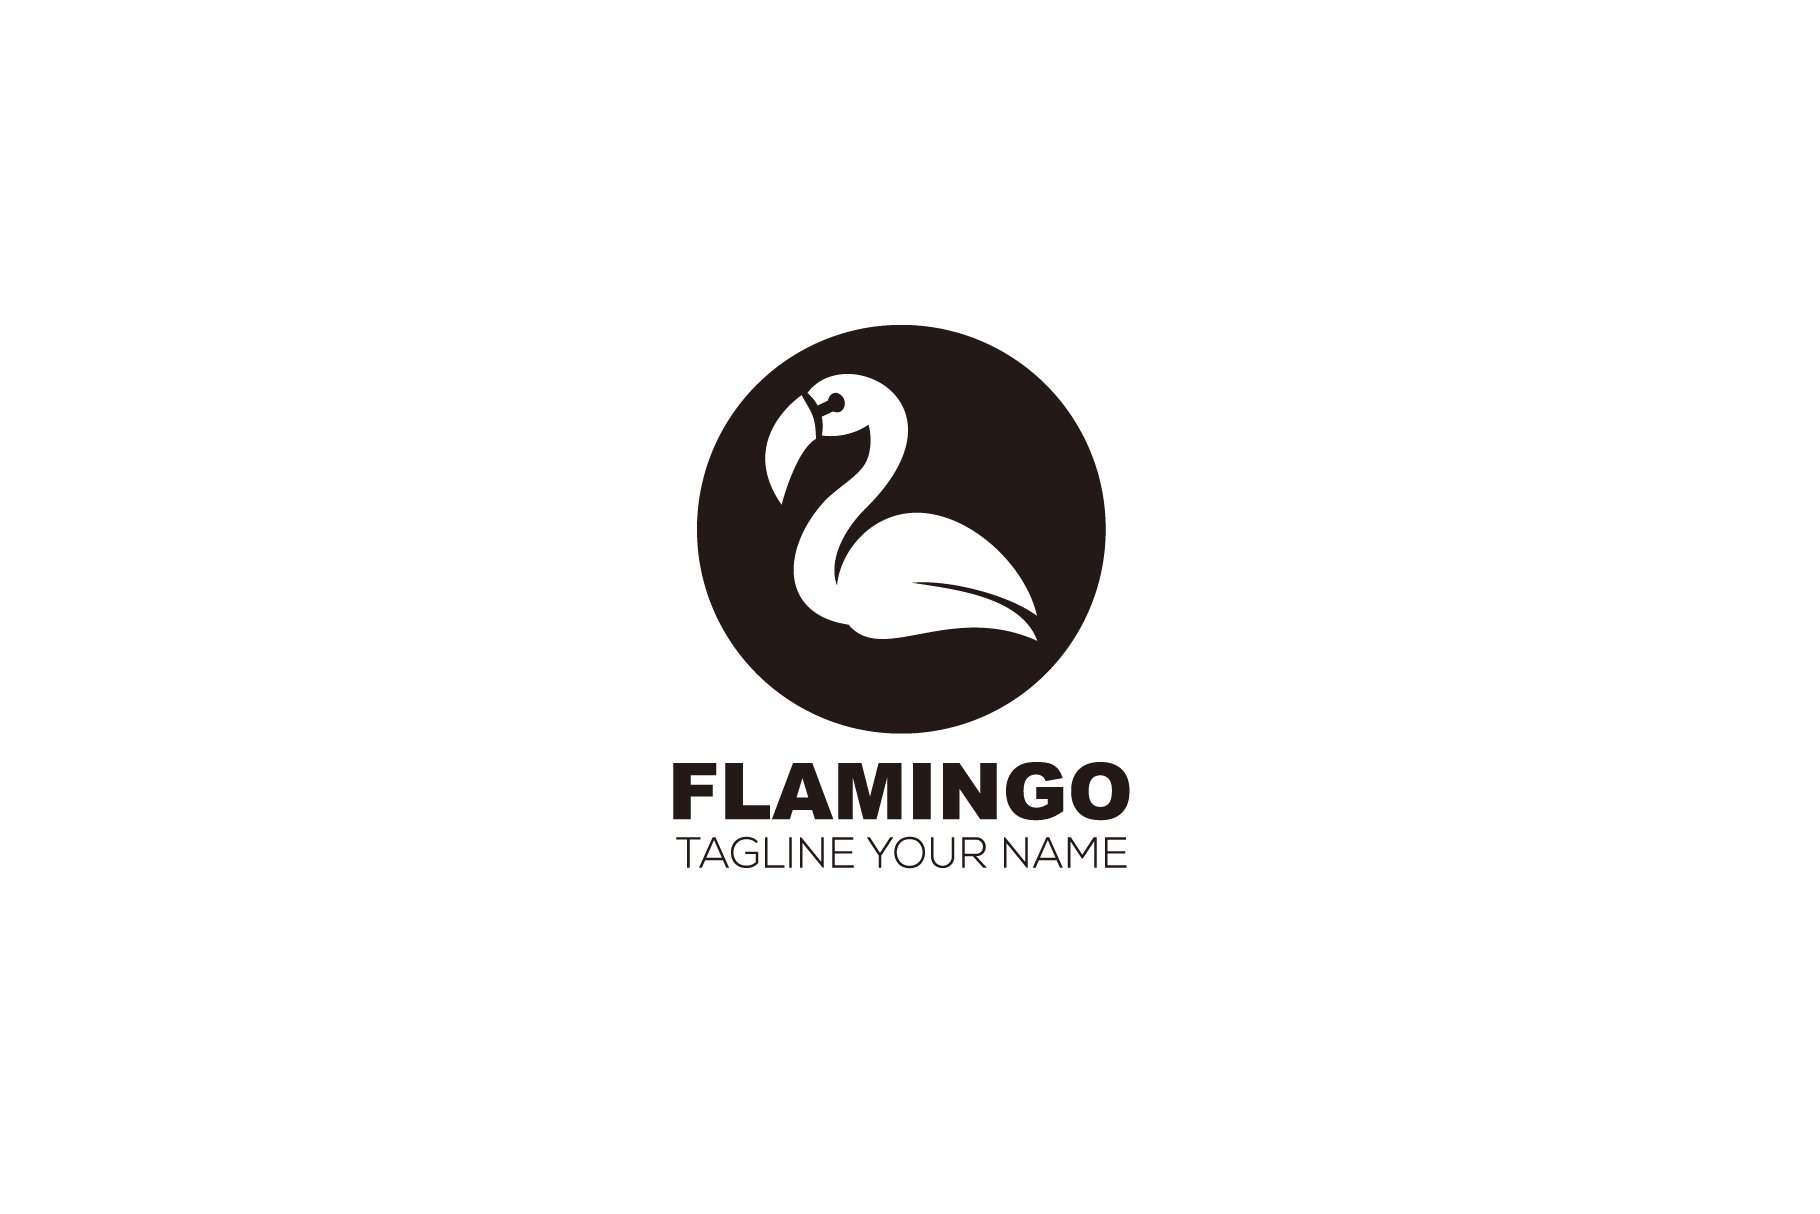 flamingo logo symbol design template cover image.